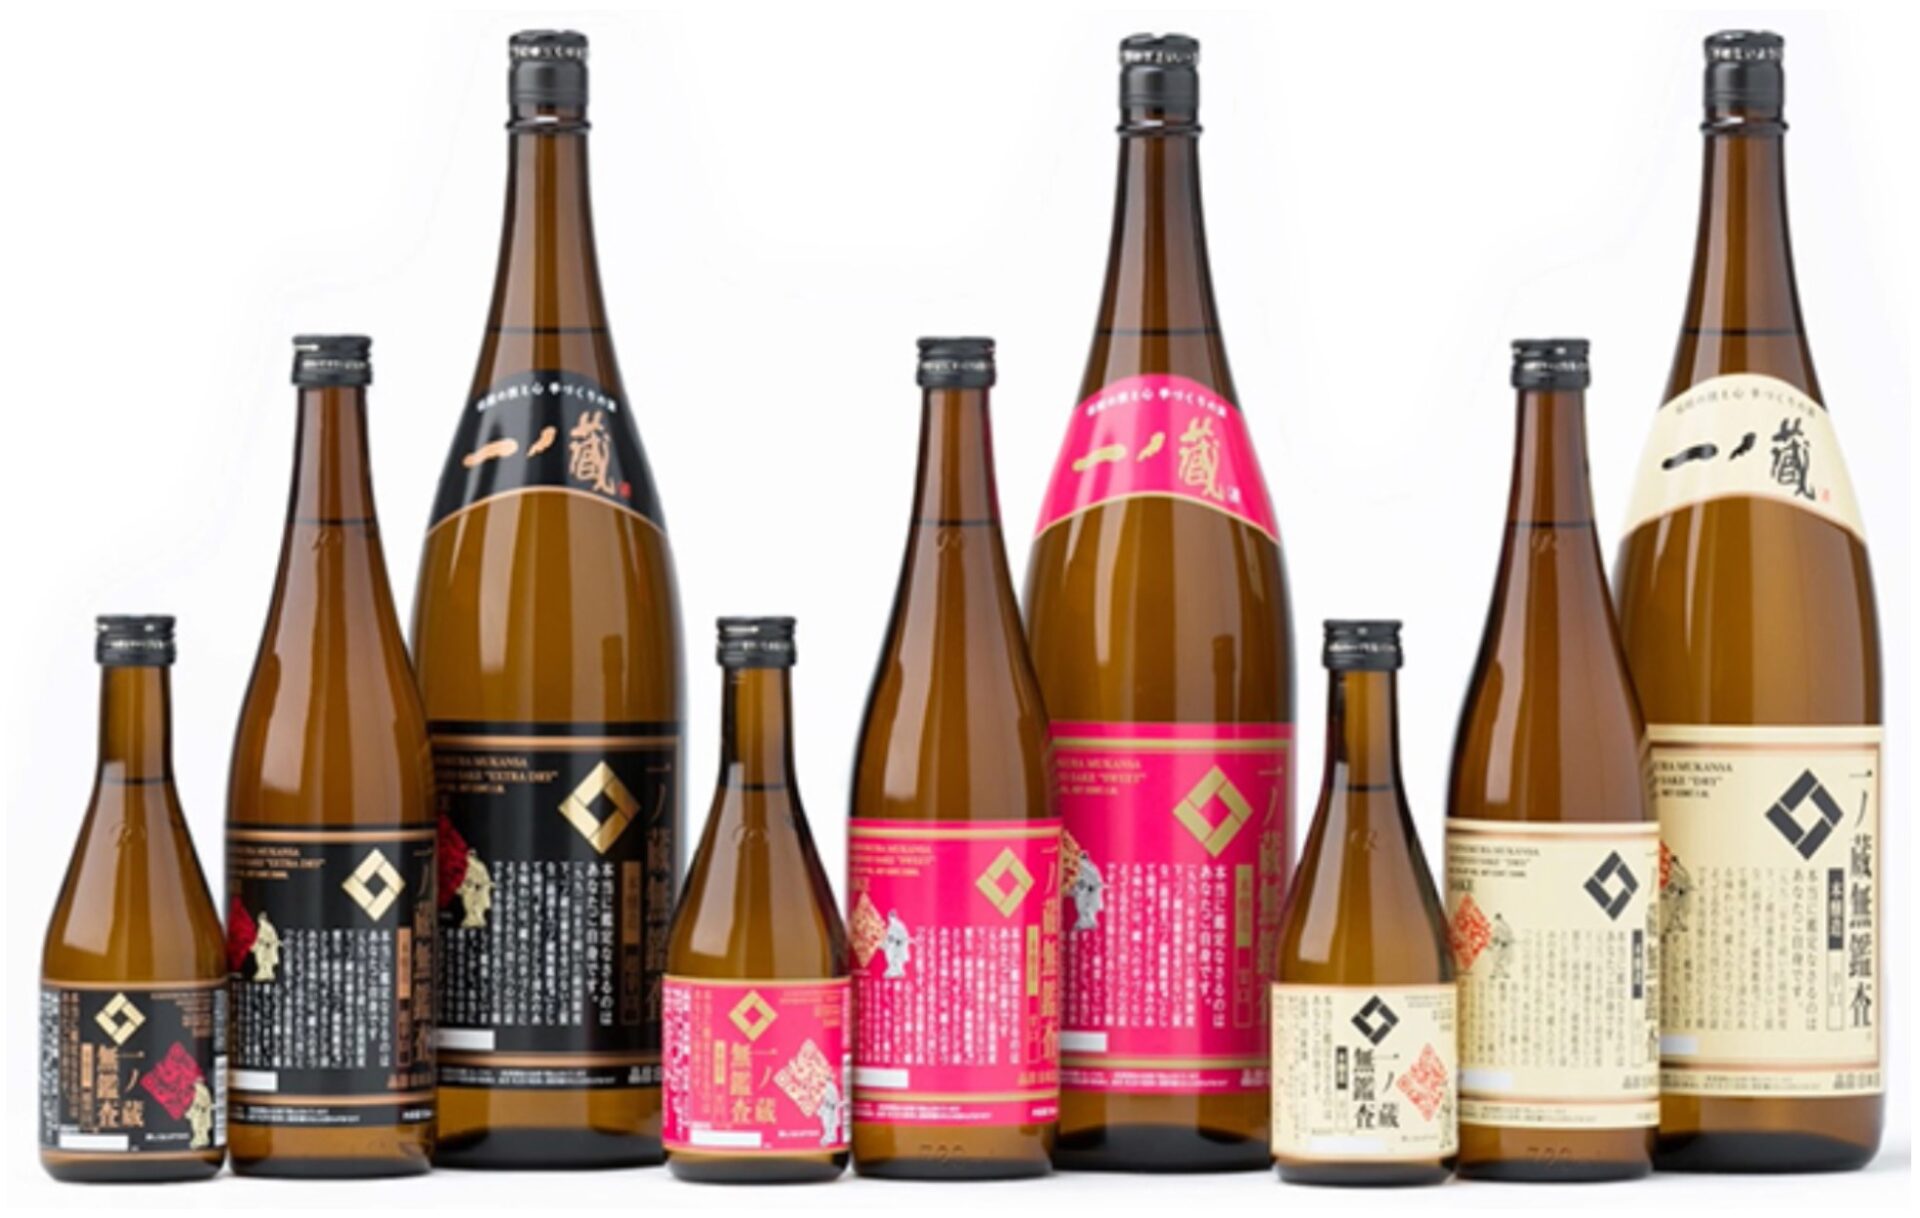 What kind of sake brand is Ichinokura? 一ノ蔵